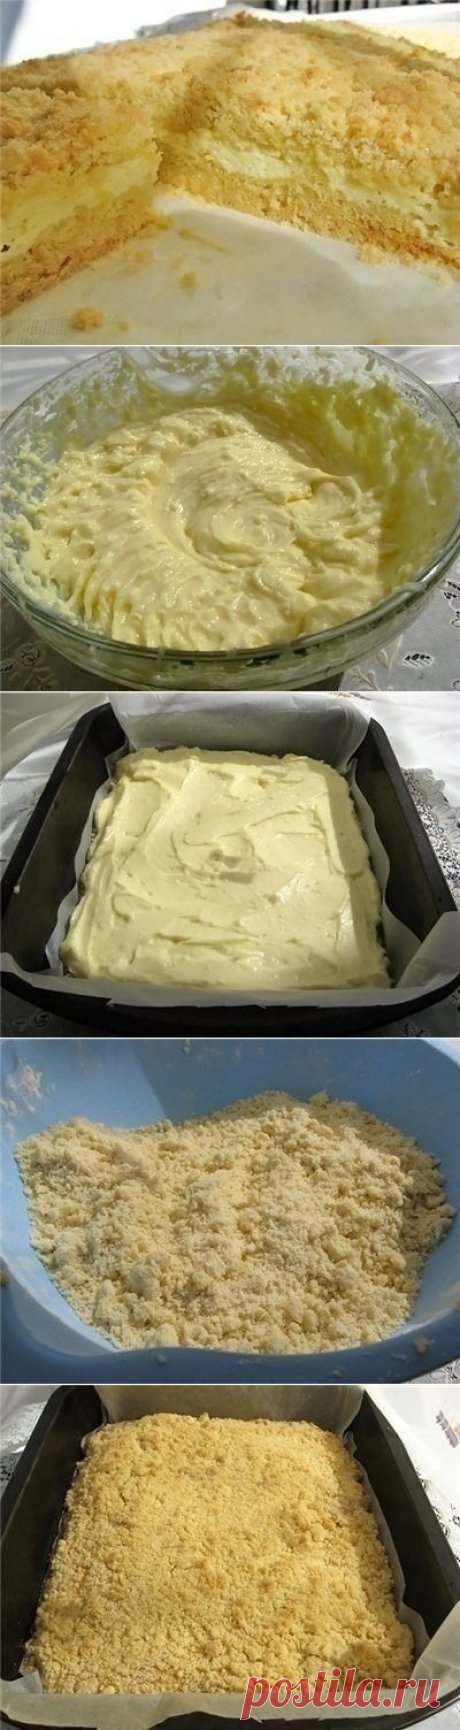 Как приготовить неимоверный тортик! - рецепт, ингредиенты и фотографии